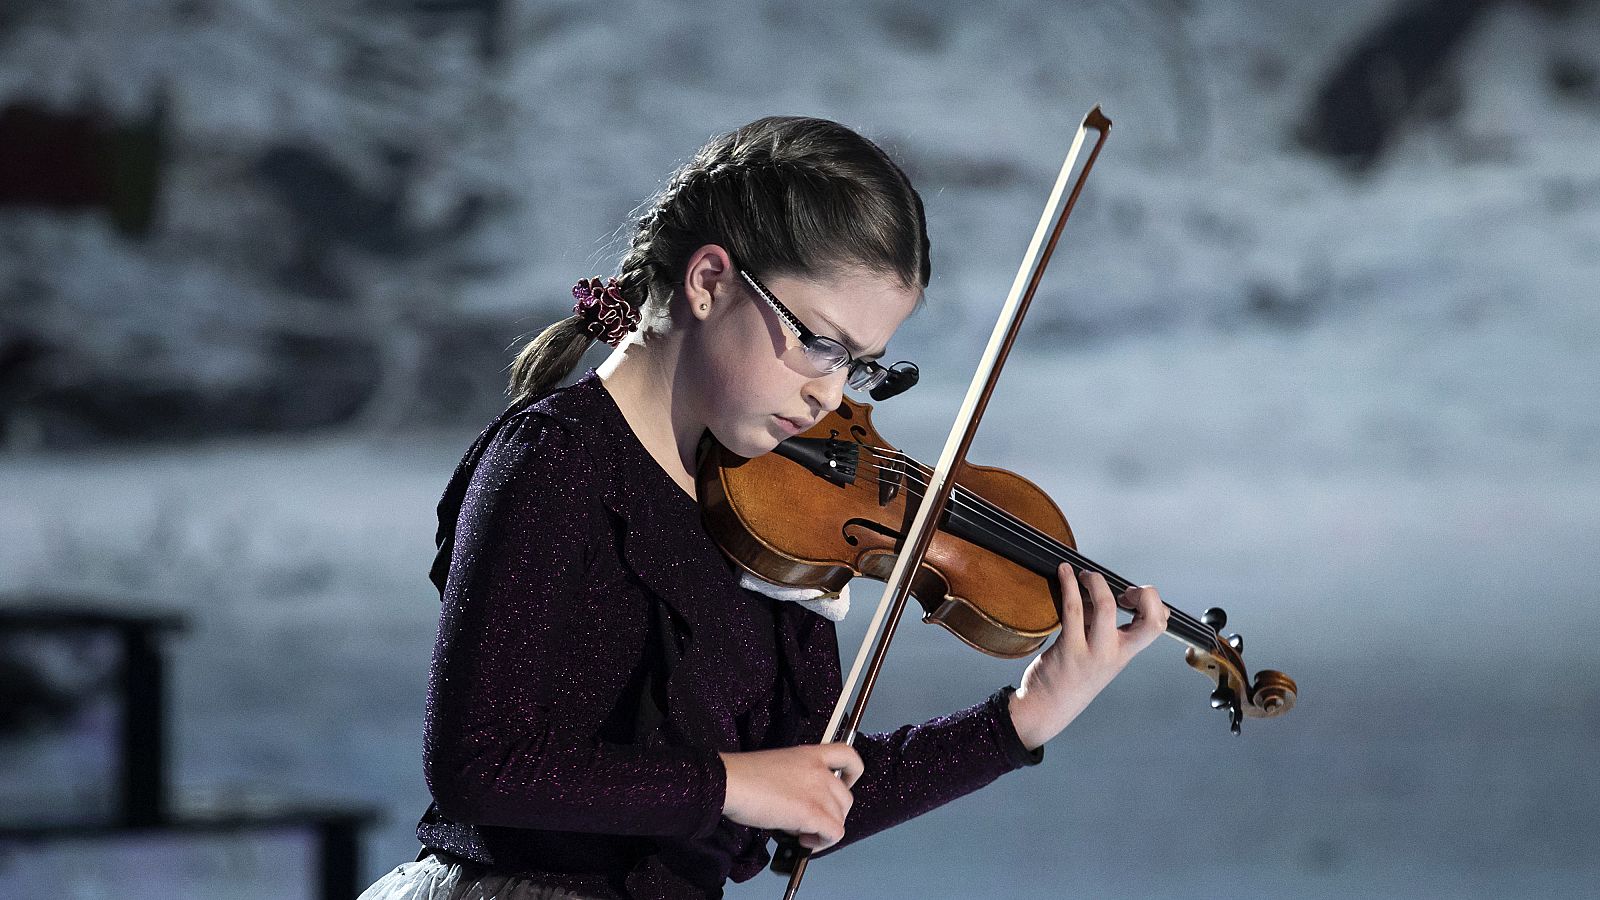 Martina interpreta de una forma maravillosa "El invierno" de Vivaldi con su violín